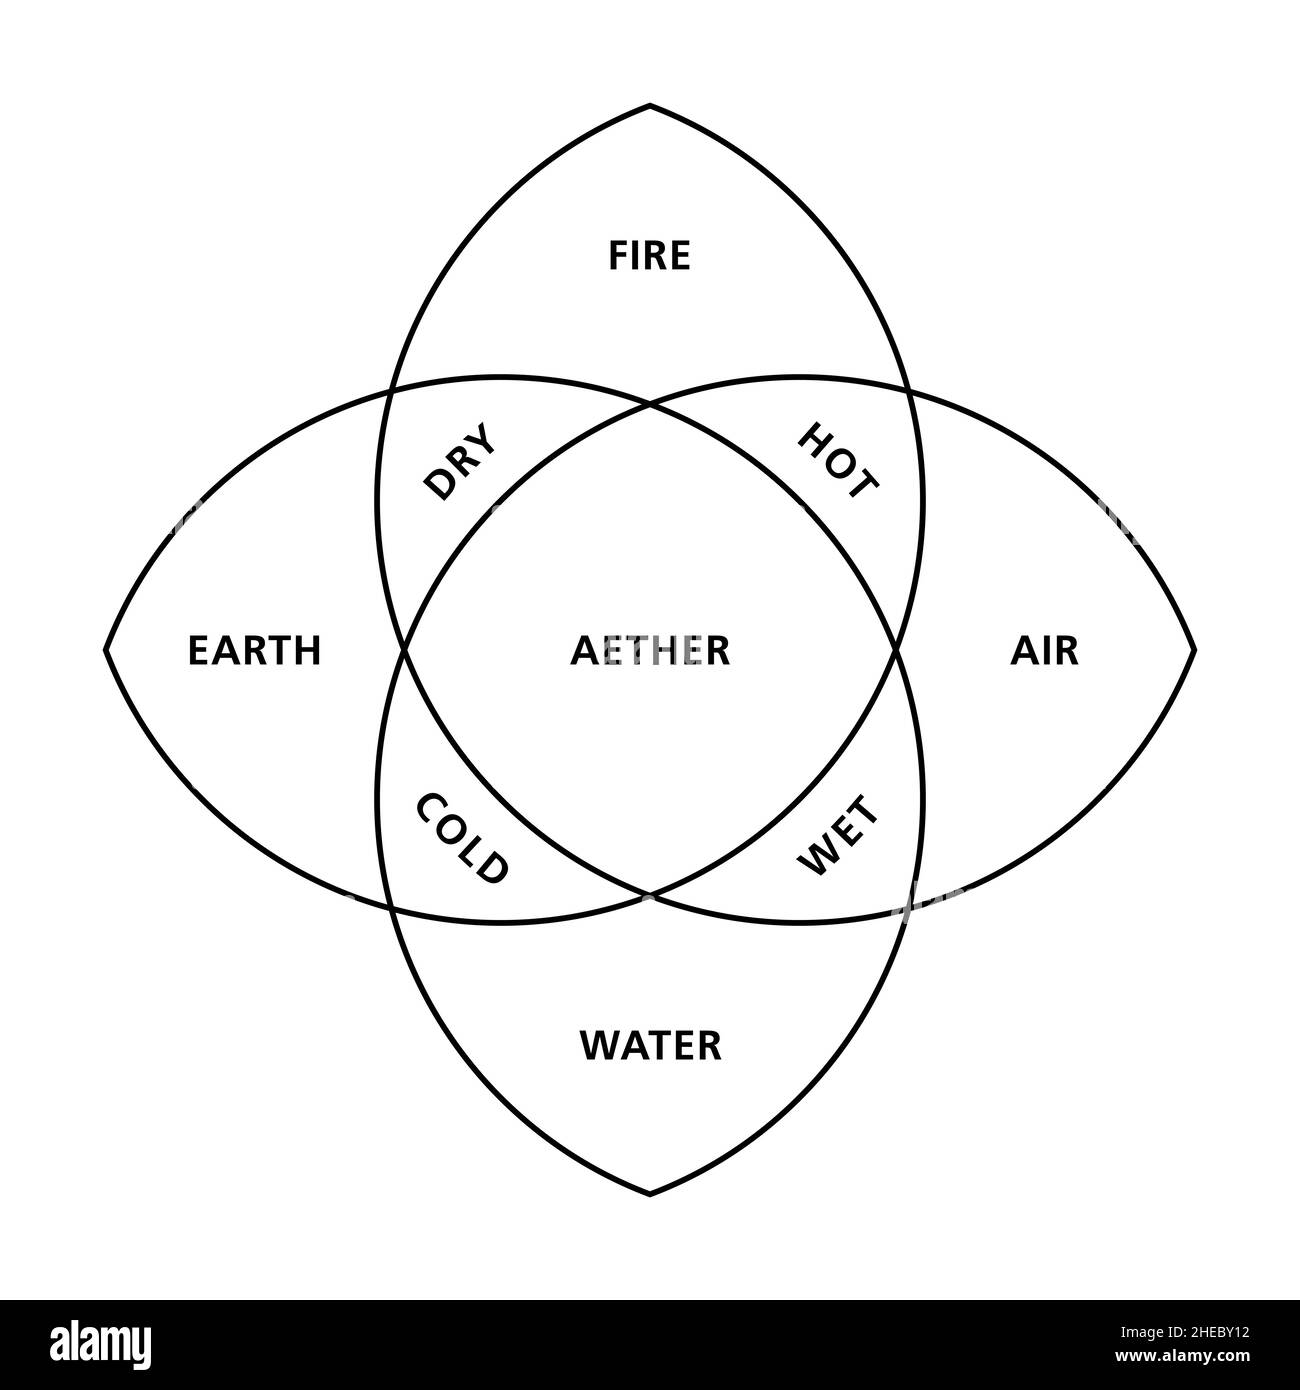 Les quatre éléments du feu, de la terre, de l'eau et de l'air avec leurs qualités chaudes, sèches, froides et humides, tel que décrit par l'ancien philosophe grec Empedocles. Banque D'Images